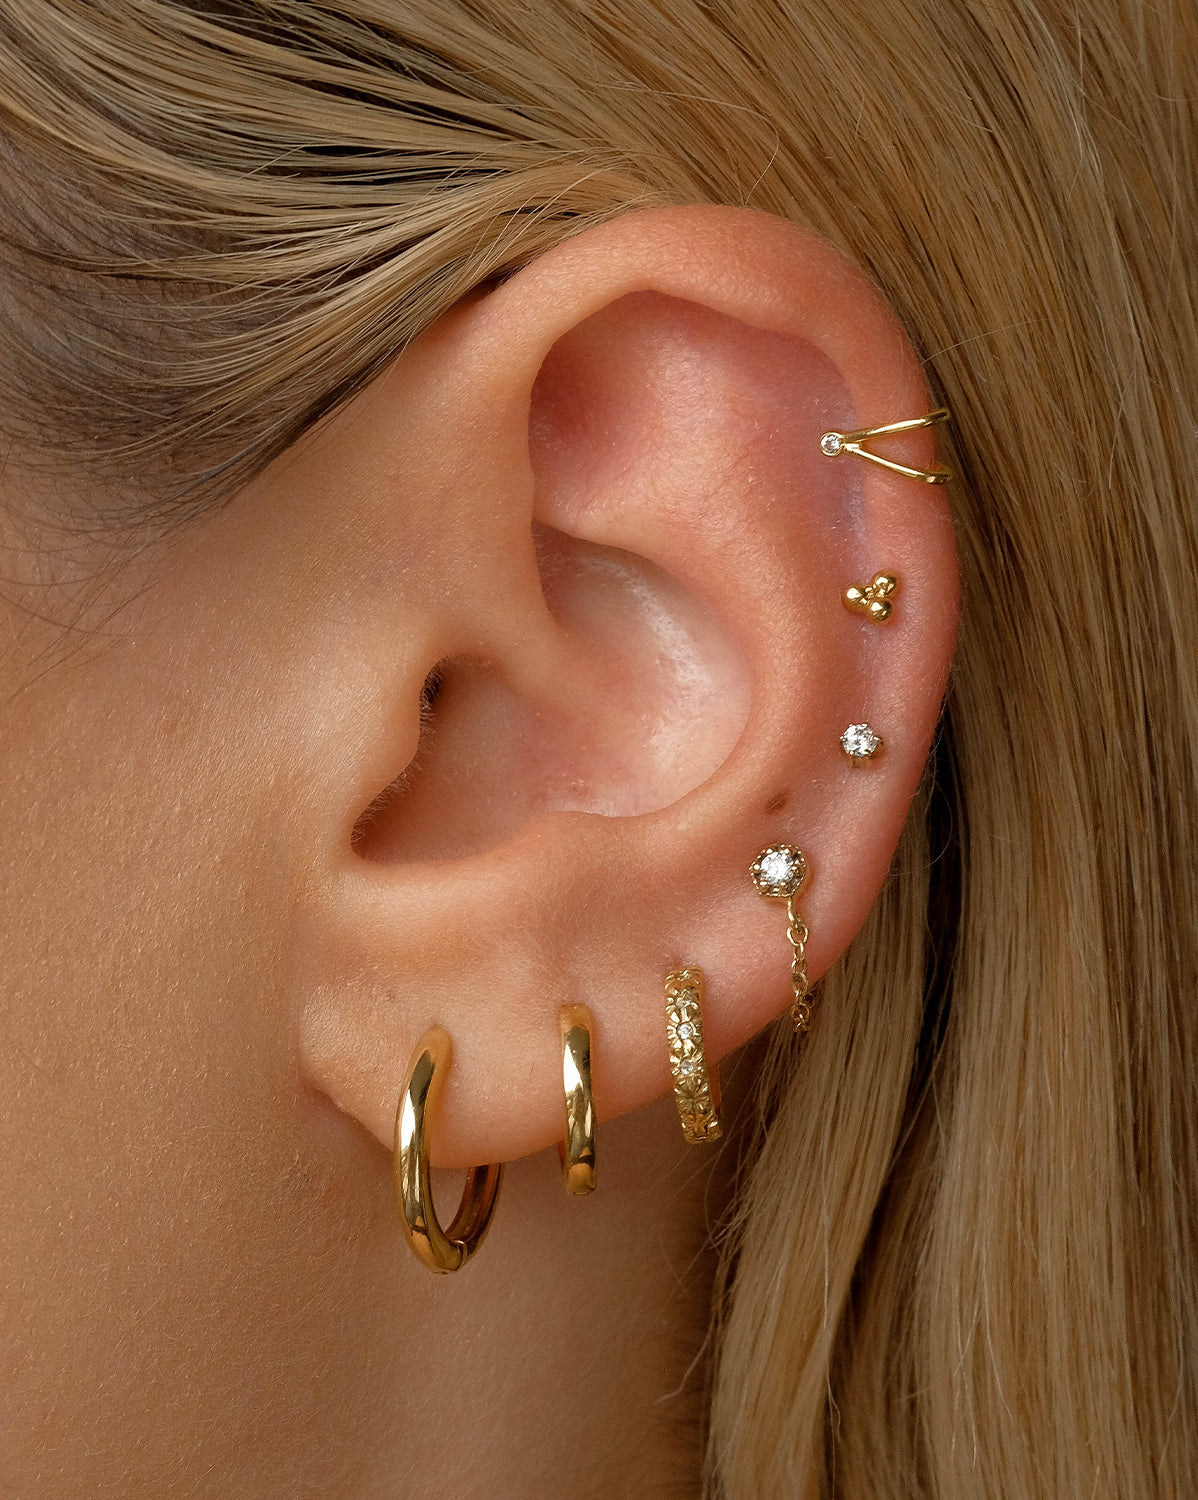 Tinkle Helix Earringshelix Earrings helix Jewelry helix Piercingsilver Earrings  helix Earring Silverhelix Chain Ring gemstone Earring - Etsy Canada